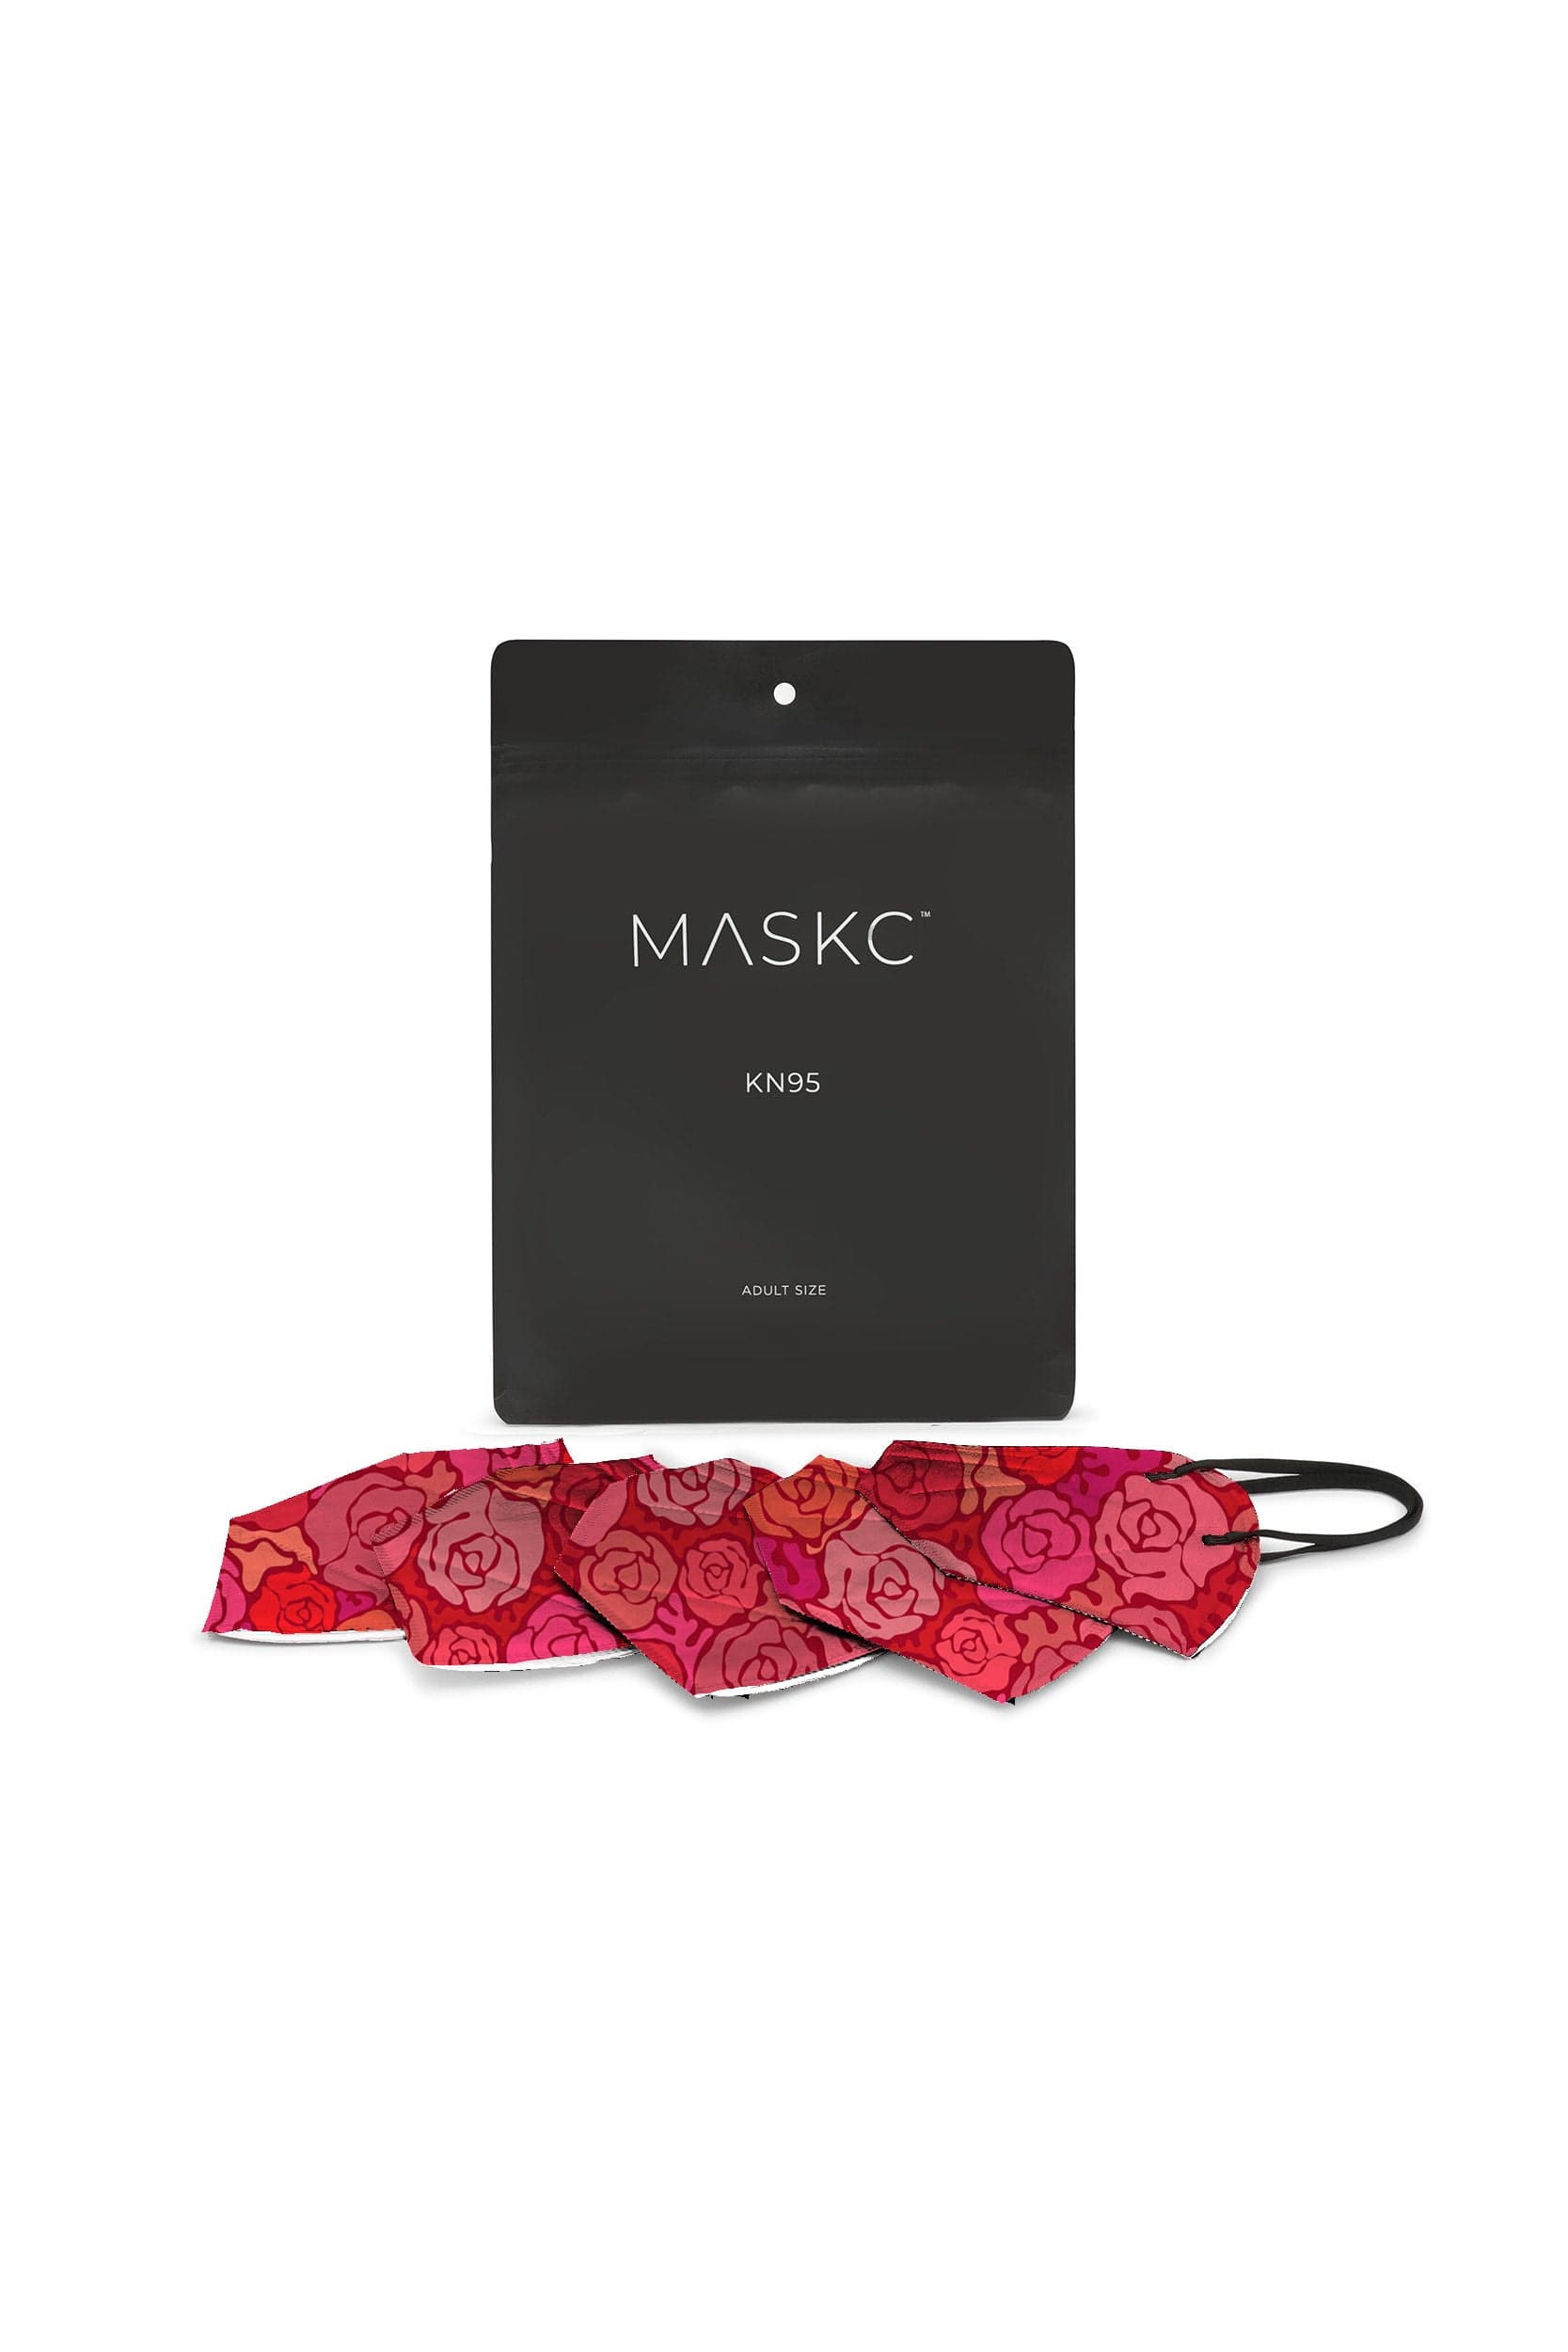 Rose KN95 Face Masks - 10 Pack